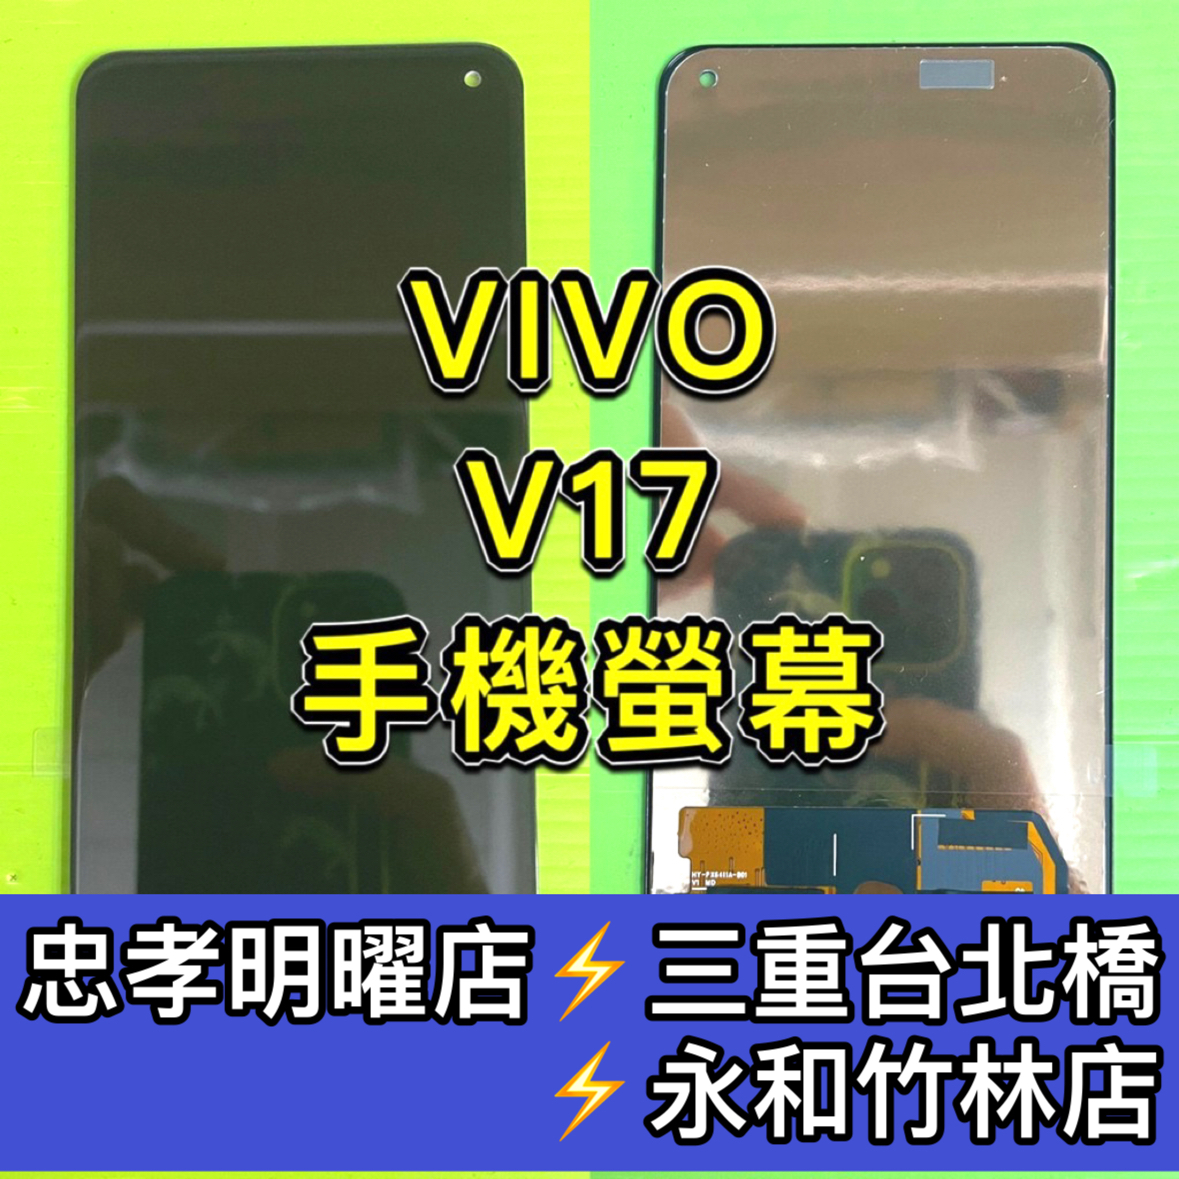 VIVO S1 V17 Y7s 螢幕 螢幕總成 換螢幕 螢幕維修更換螢幕